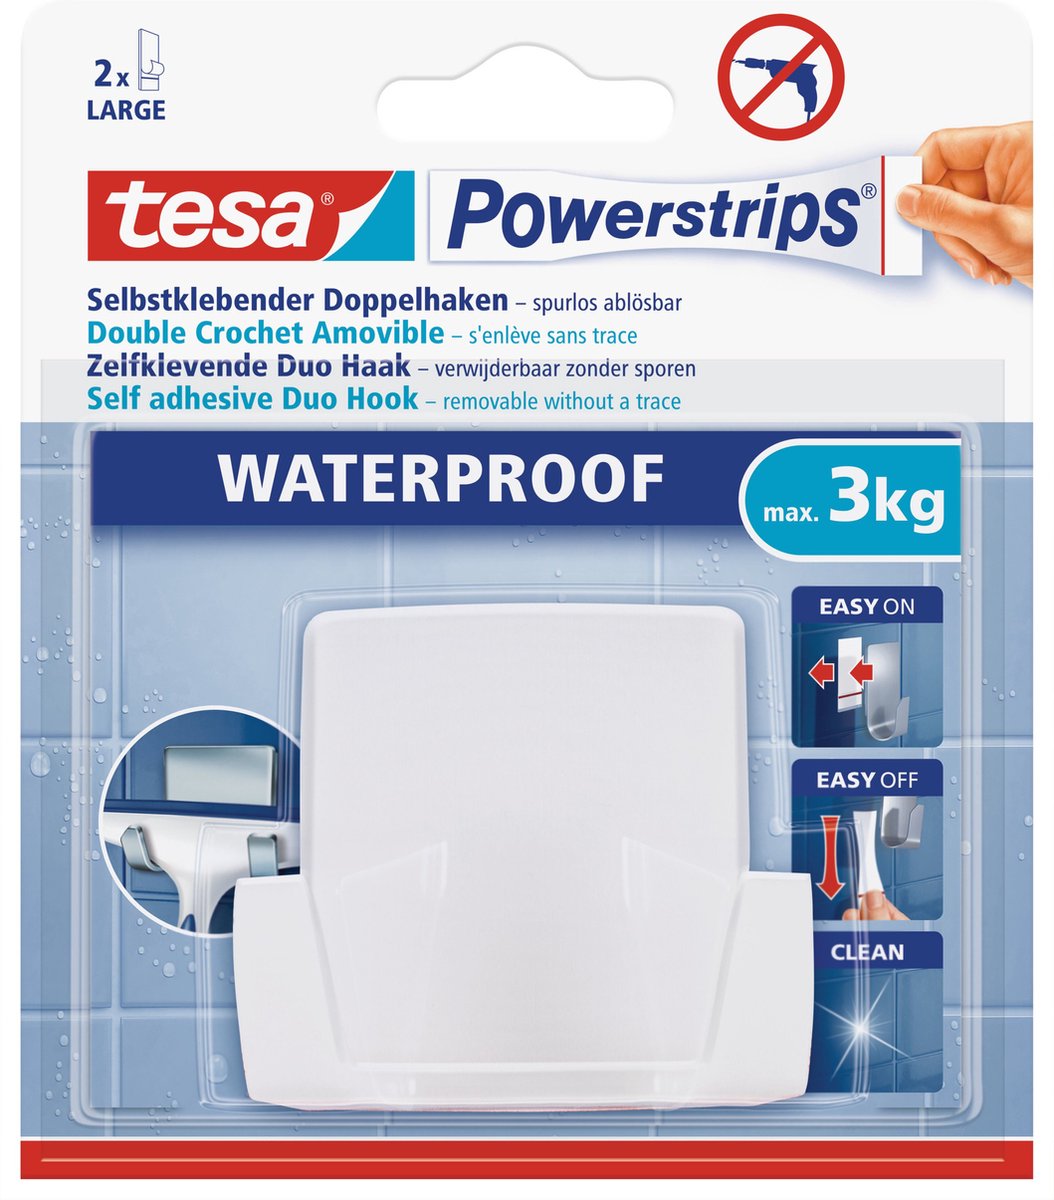 1x Tesa Powerstrips duohaken waterproof - Klusbenodigdheden - Huishouden - Verwijderbare haken - Opplak haken